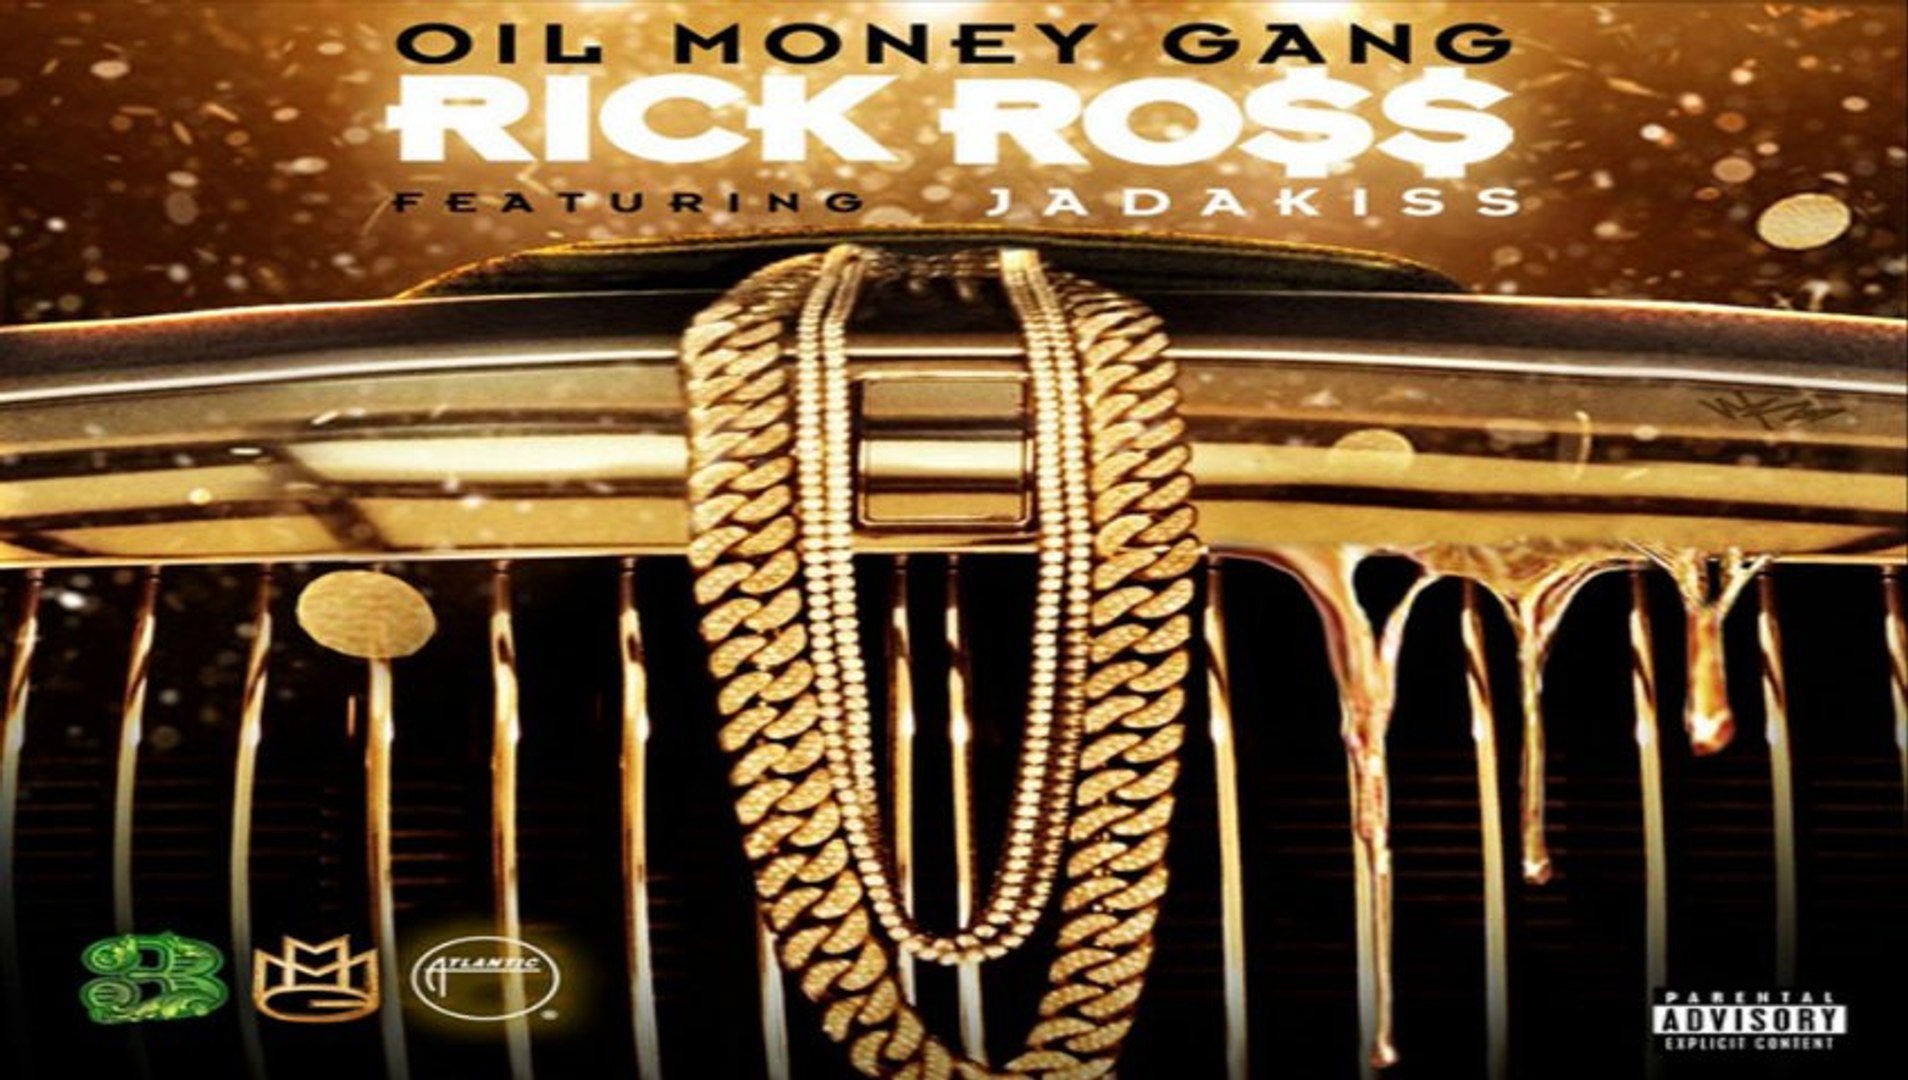 DOWNLOAD MP3 ] Rick Ross - Oil Money Gang (feat. Jadakiss) [Explicit] [  iTunesRip ] - video Dailymotion